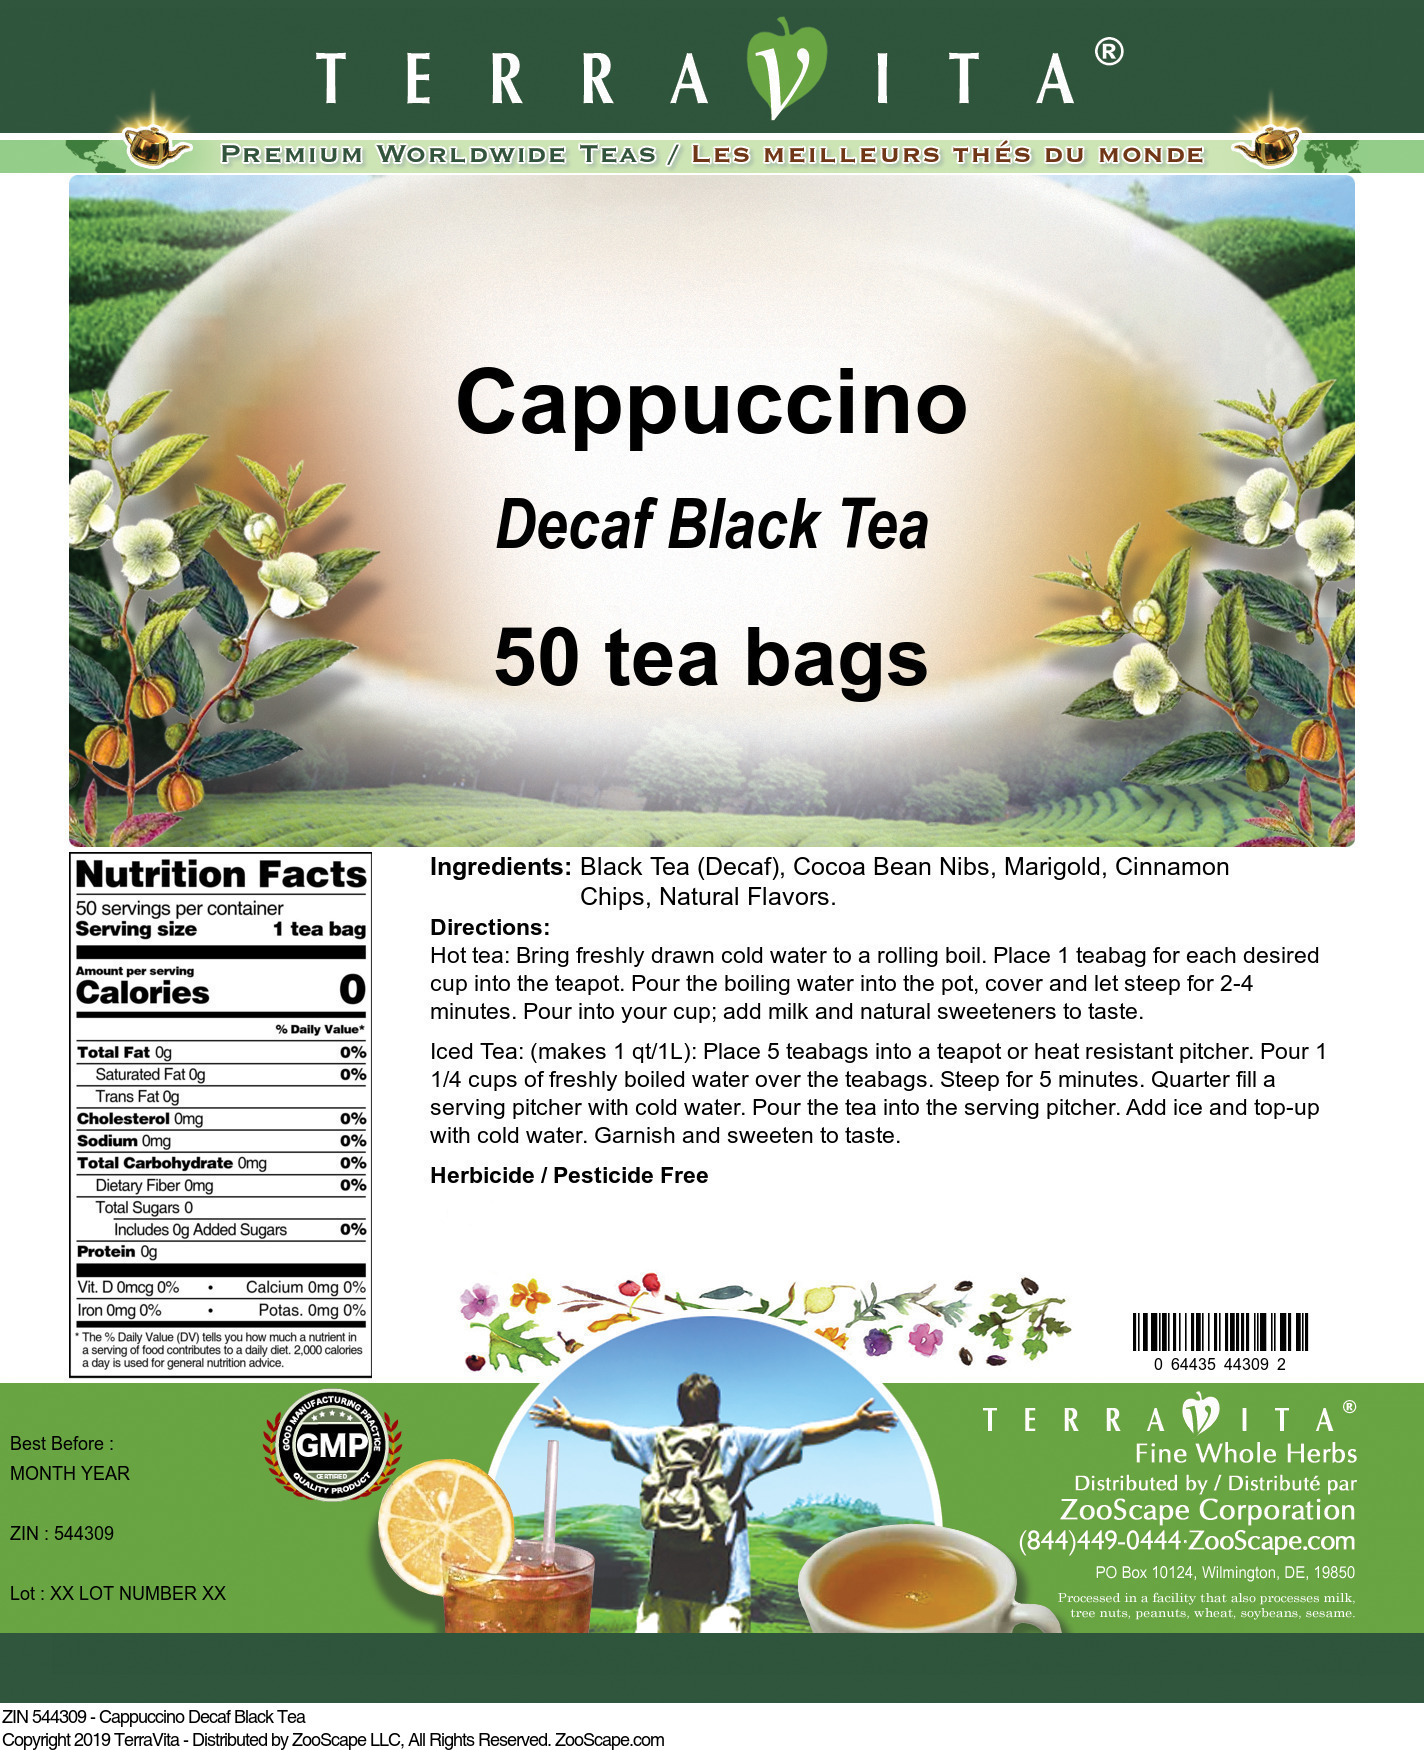 Cappuccino Decaf Black Tea - Label